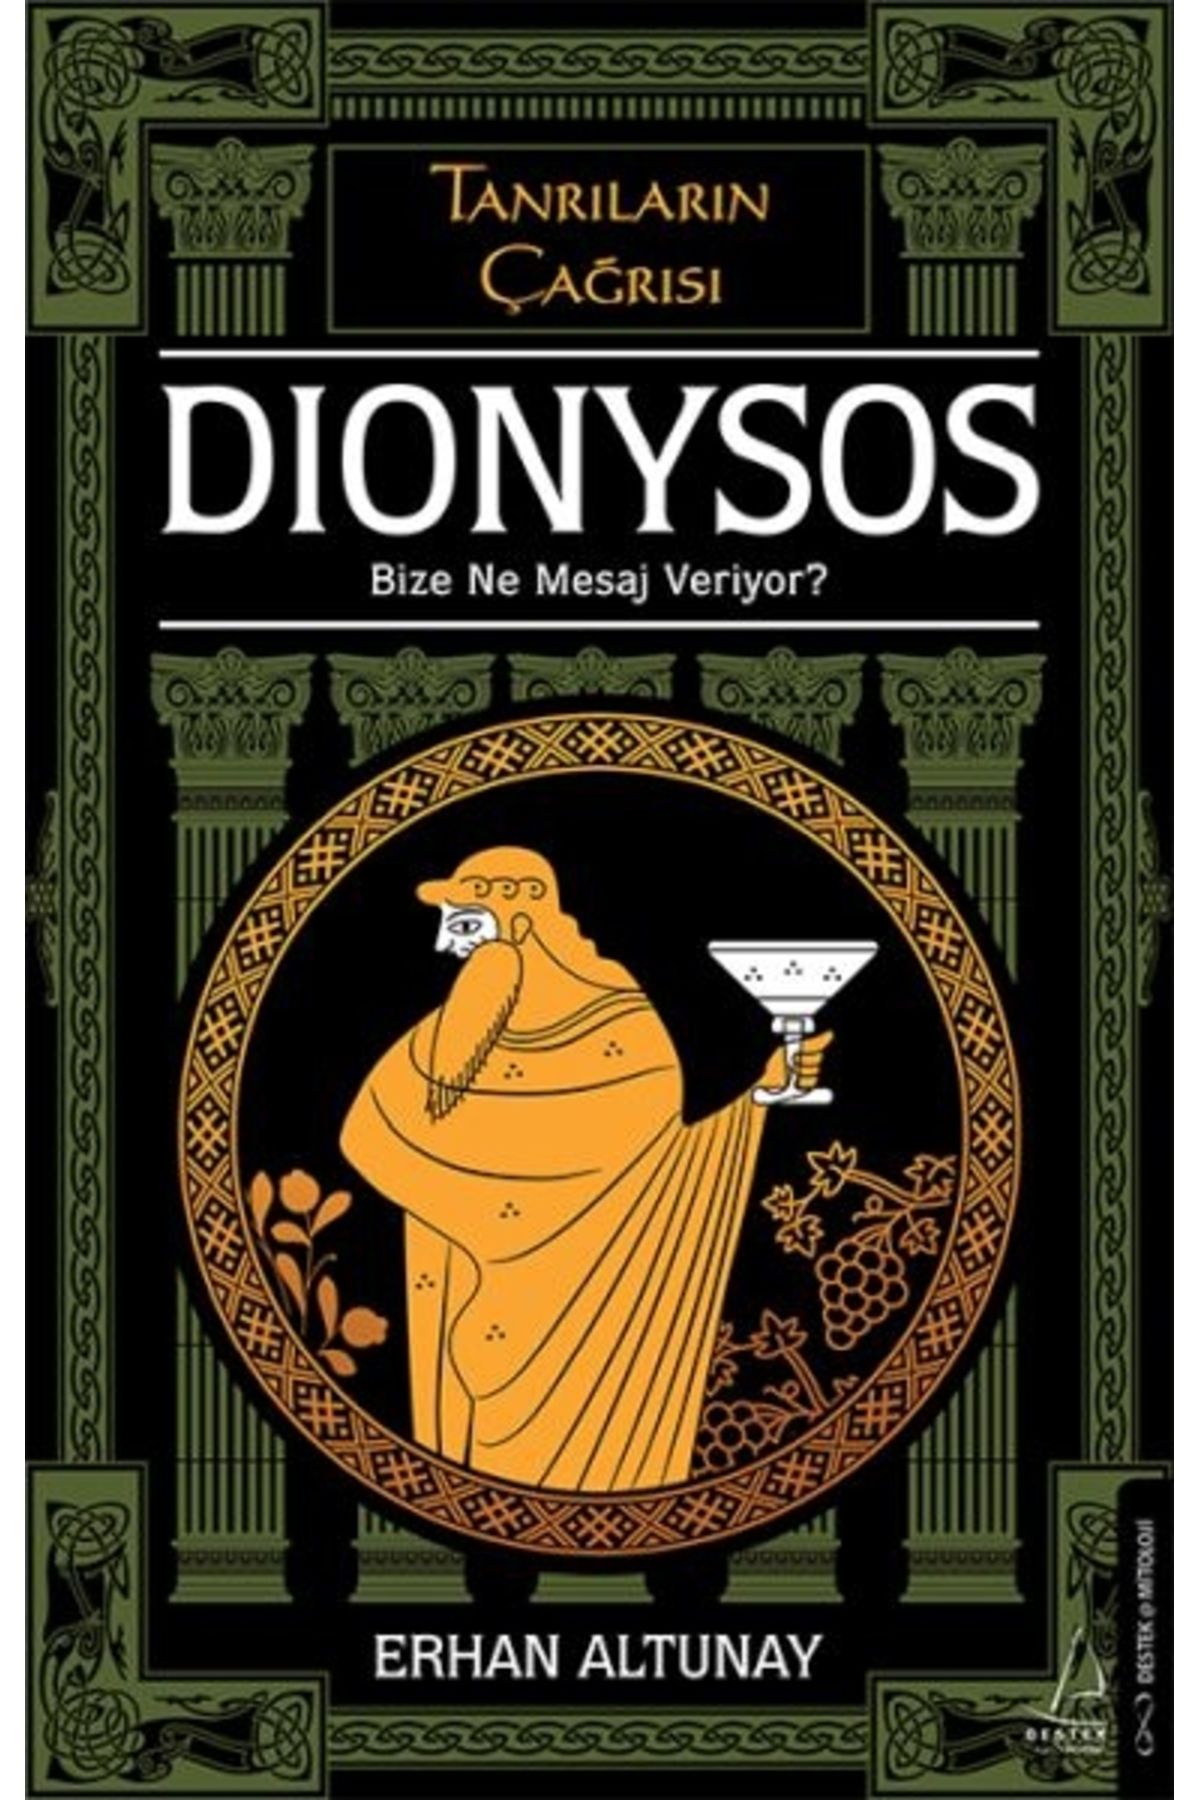 Destek Yayınları Tanrıların Çağrısı - Dionysos